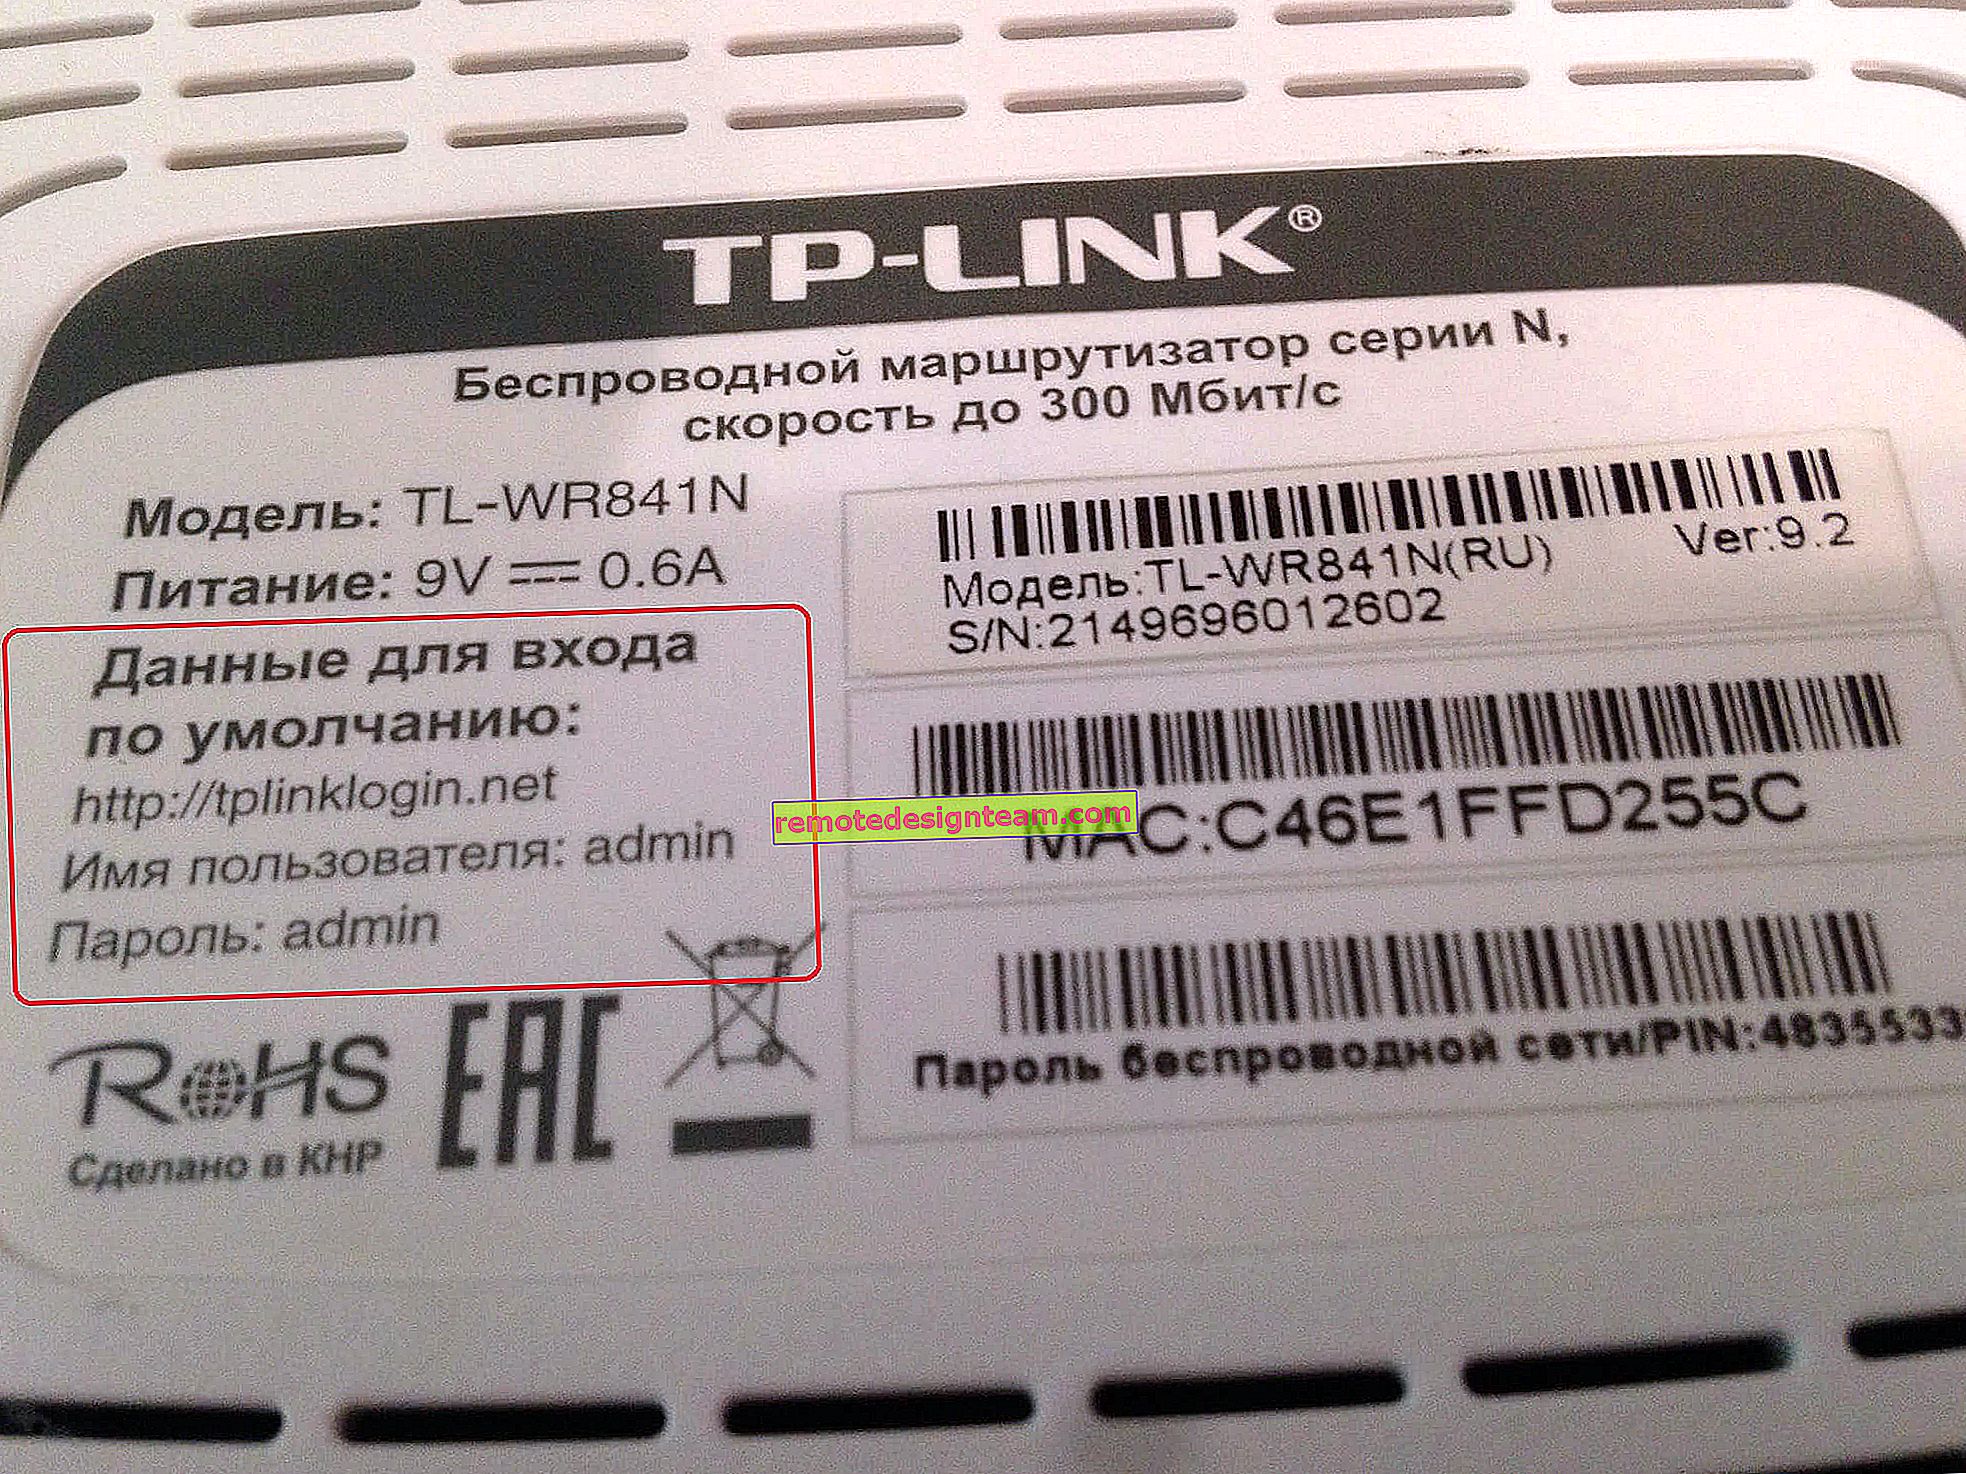 Bagaimana cara menemukan kata sandi di router TP-Link? Cari tahu kata sandi dari Wi-Fi dan pengaturan